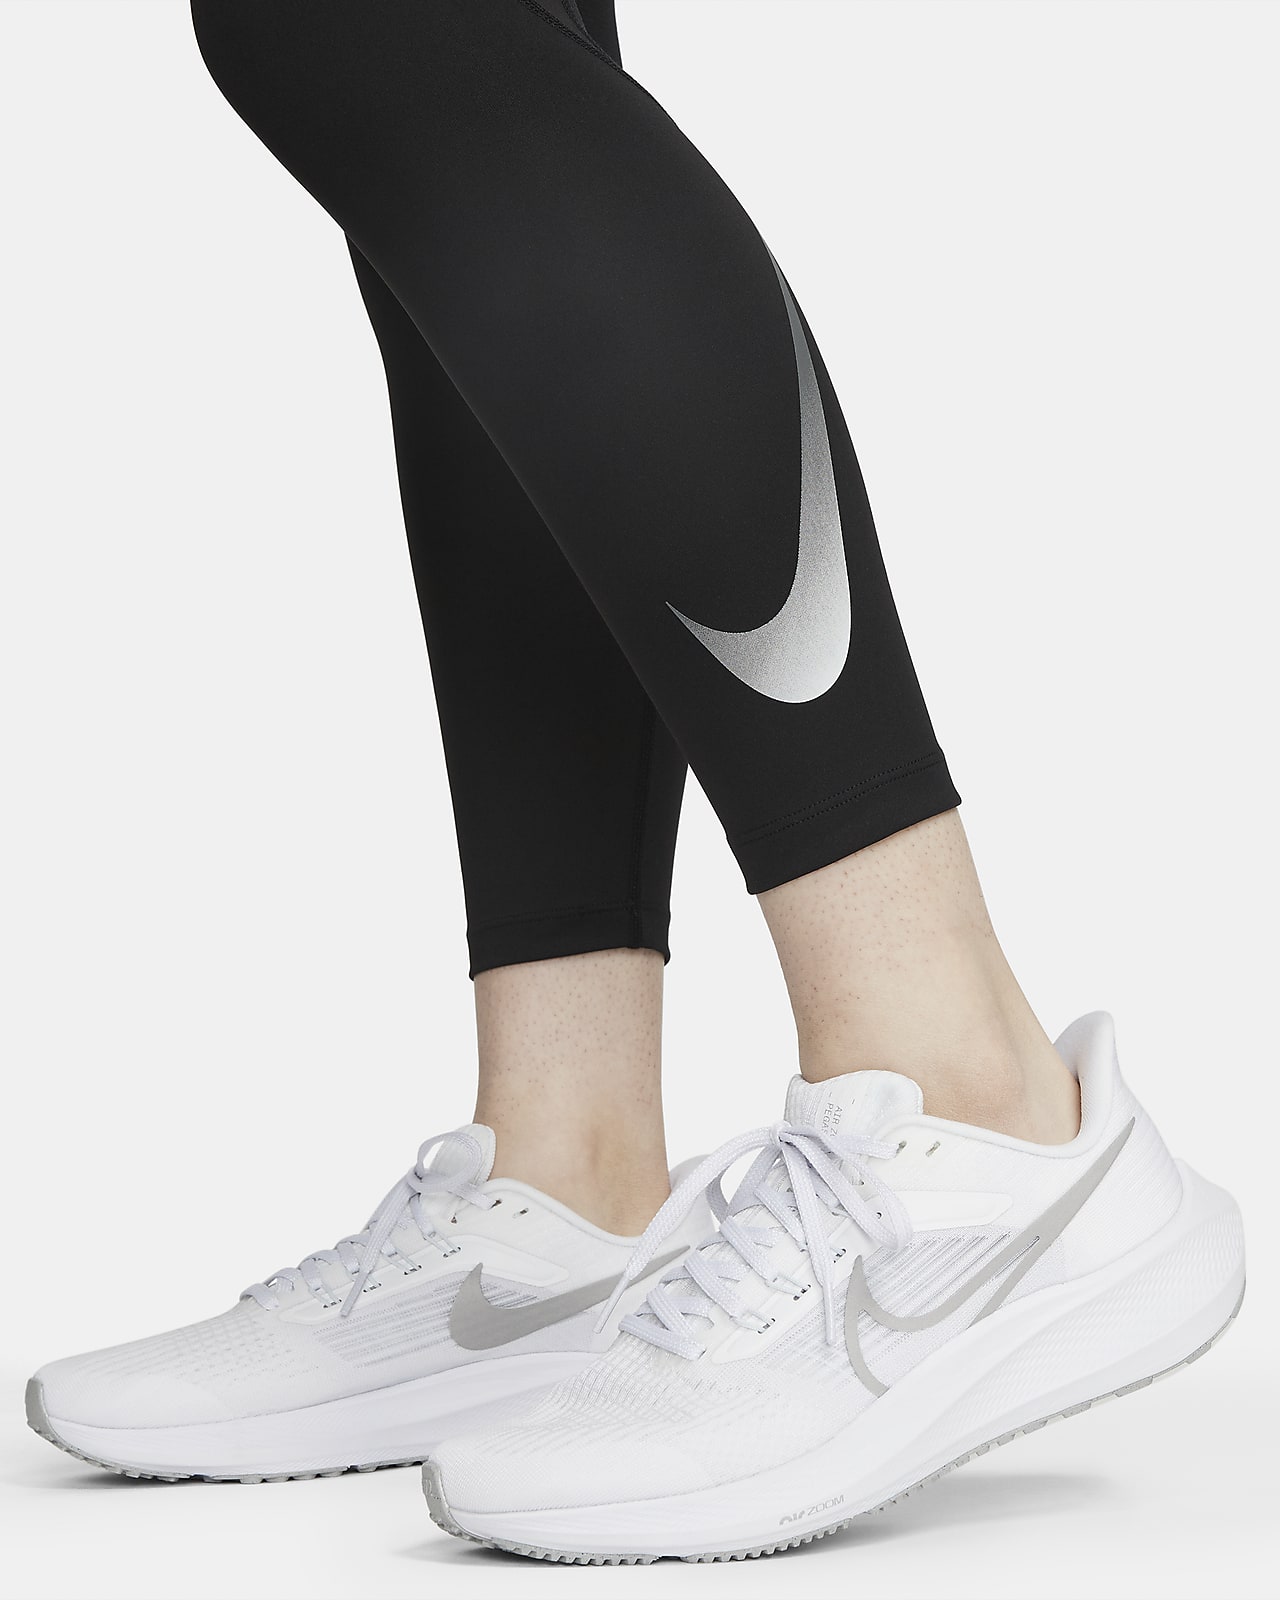 Nike Small(8-10)500/= ❗ SOLD 🔥 ❗ Mesh leggings